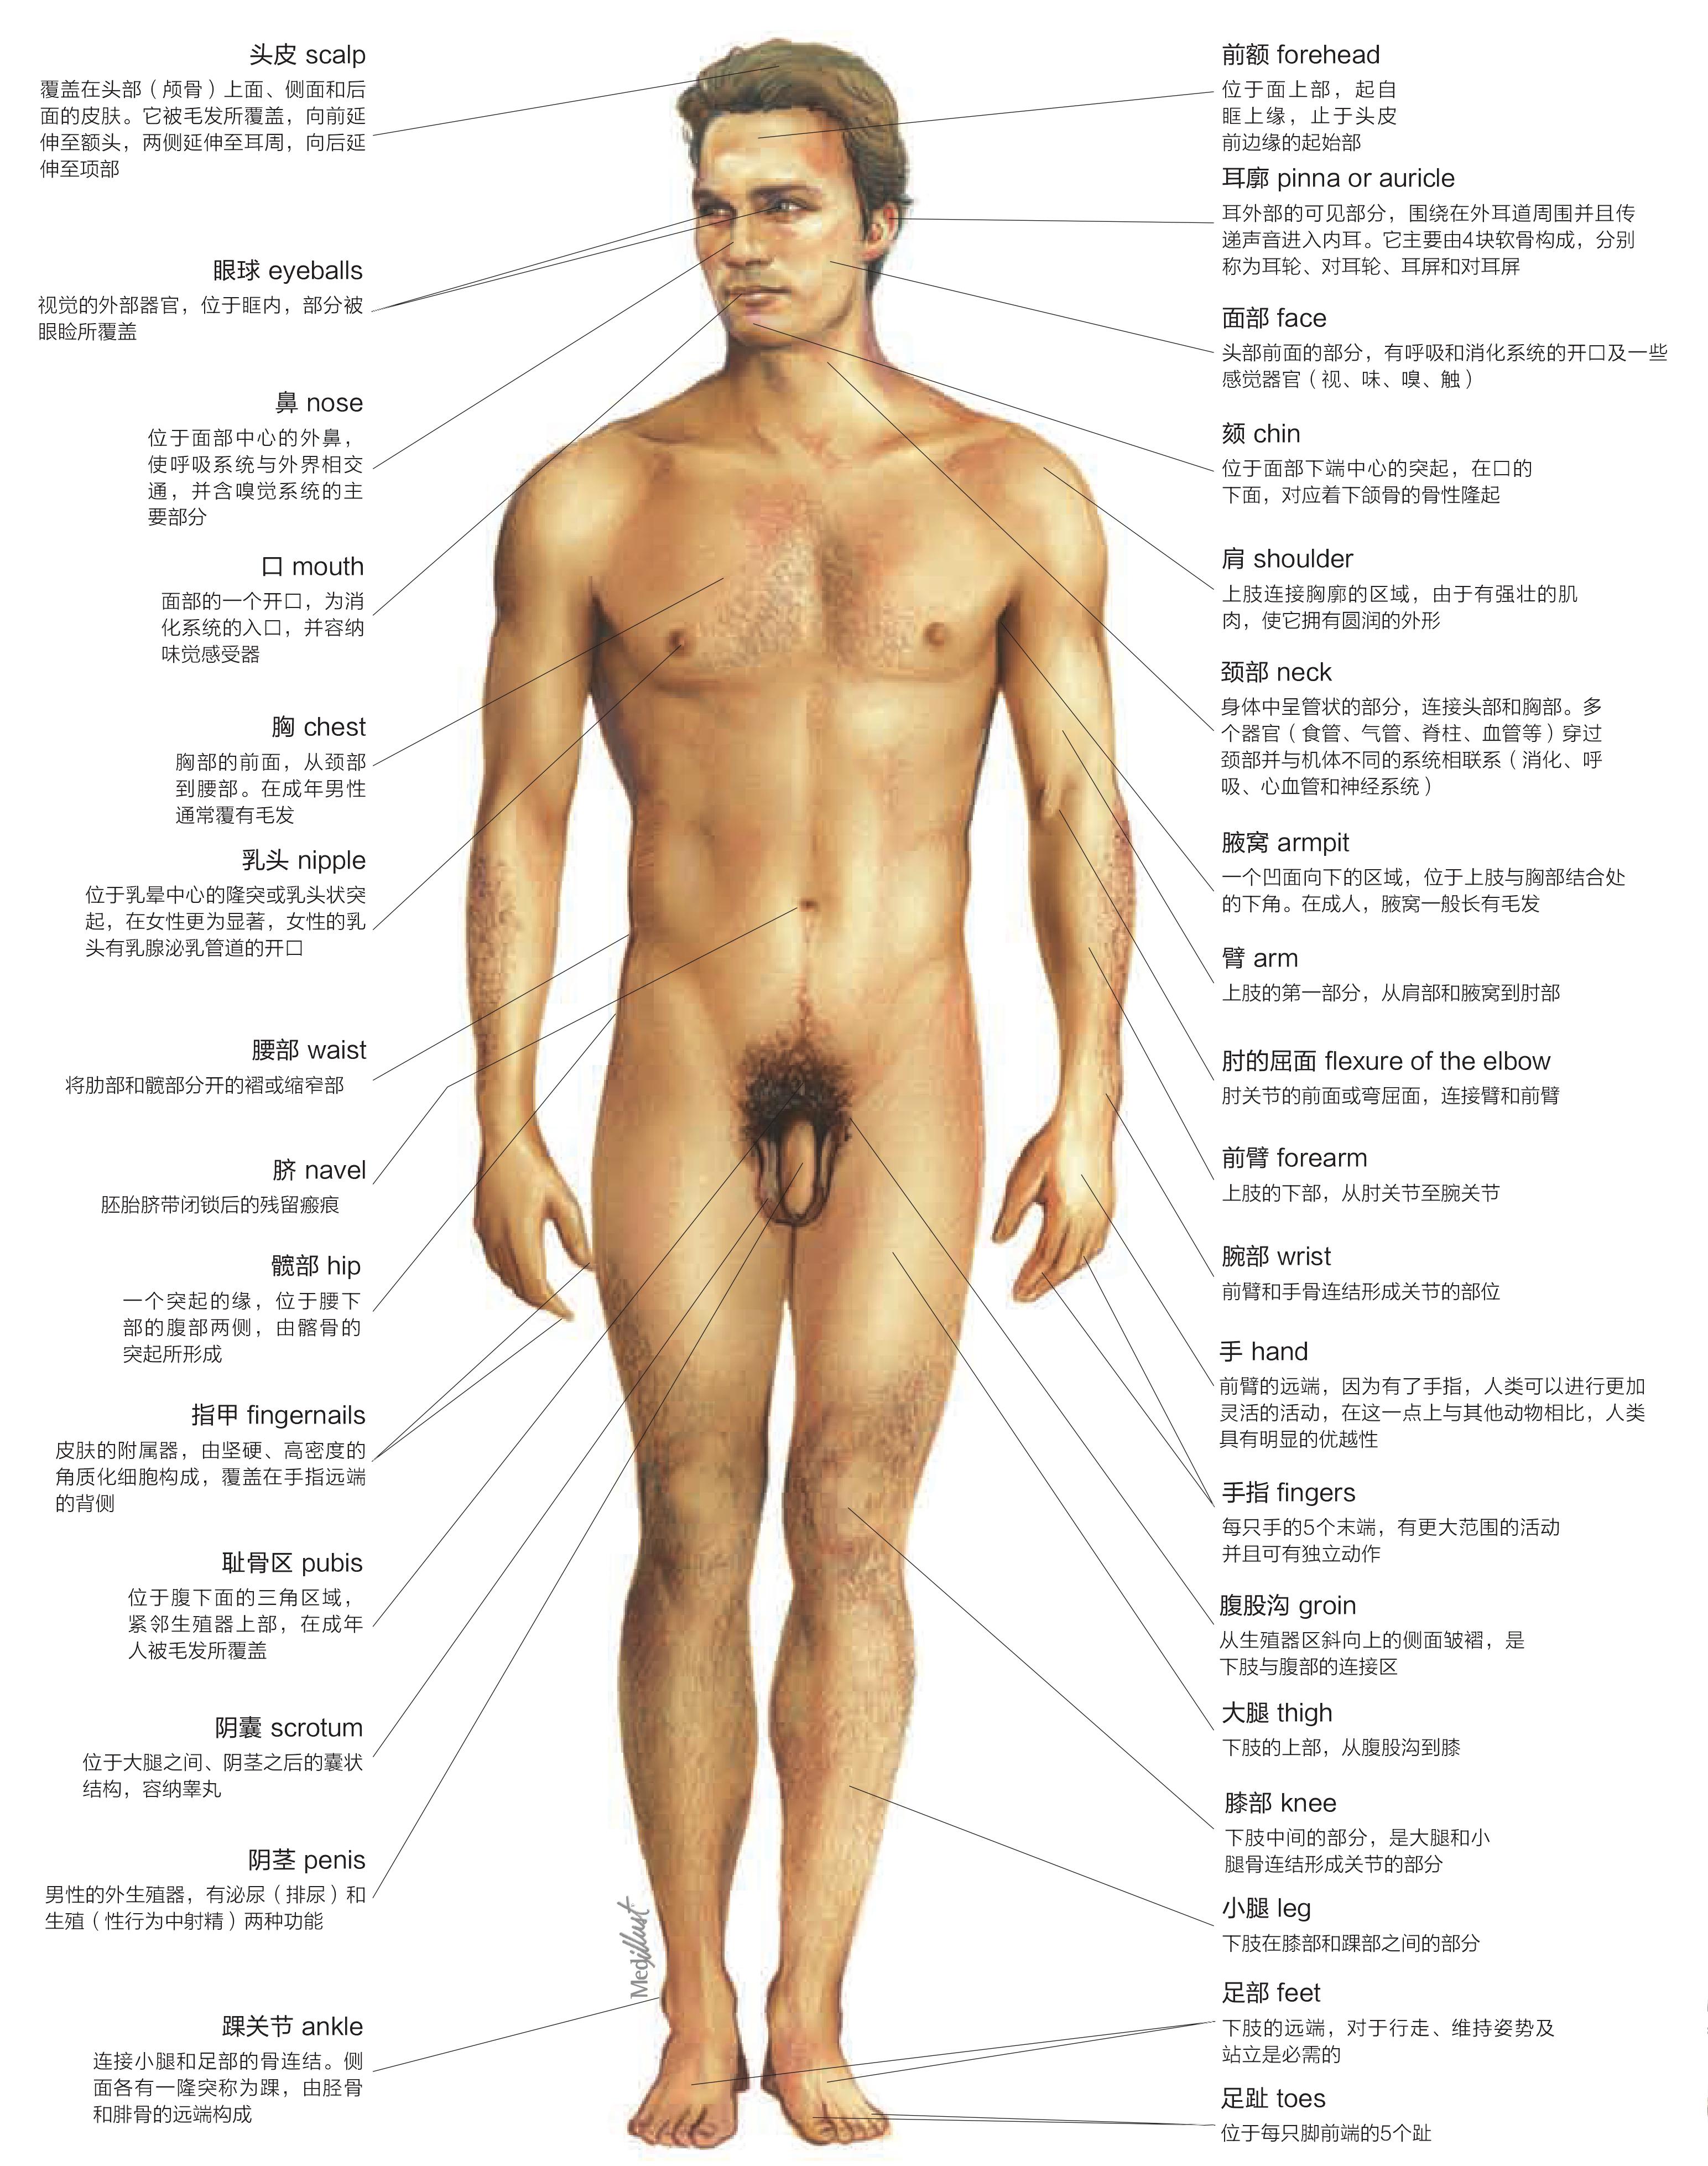 体表解剖结构:男性前面观